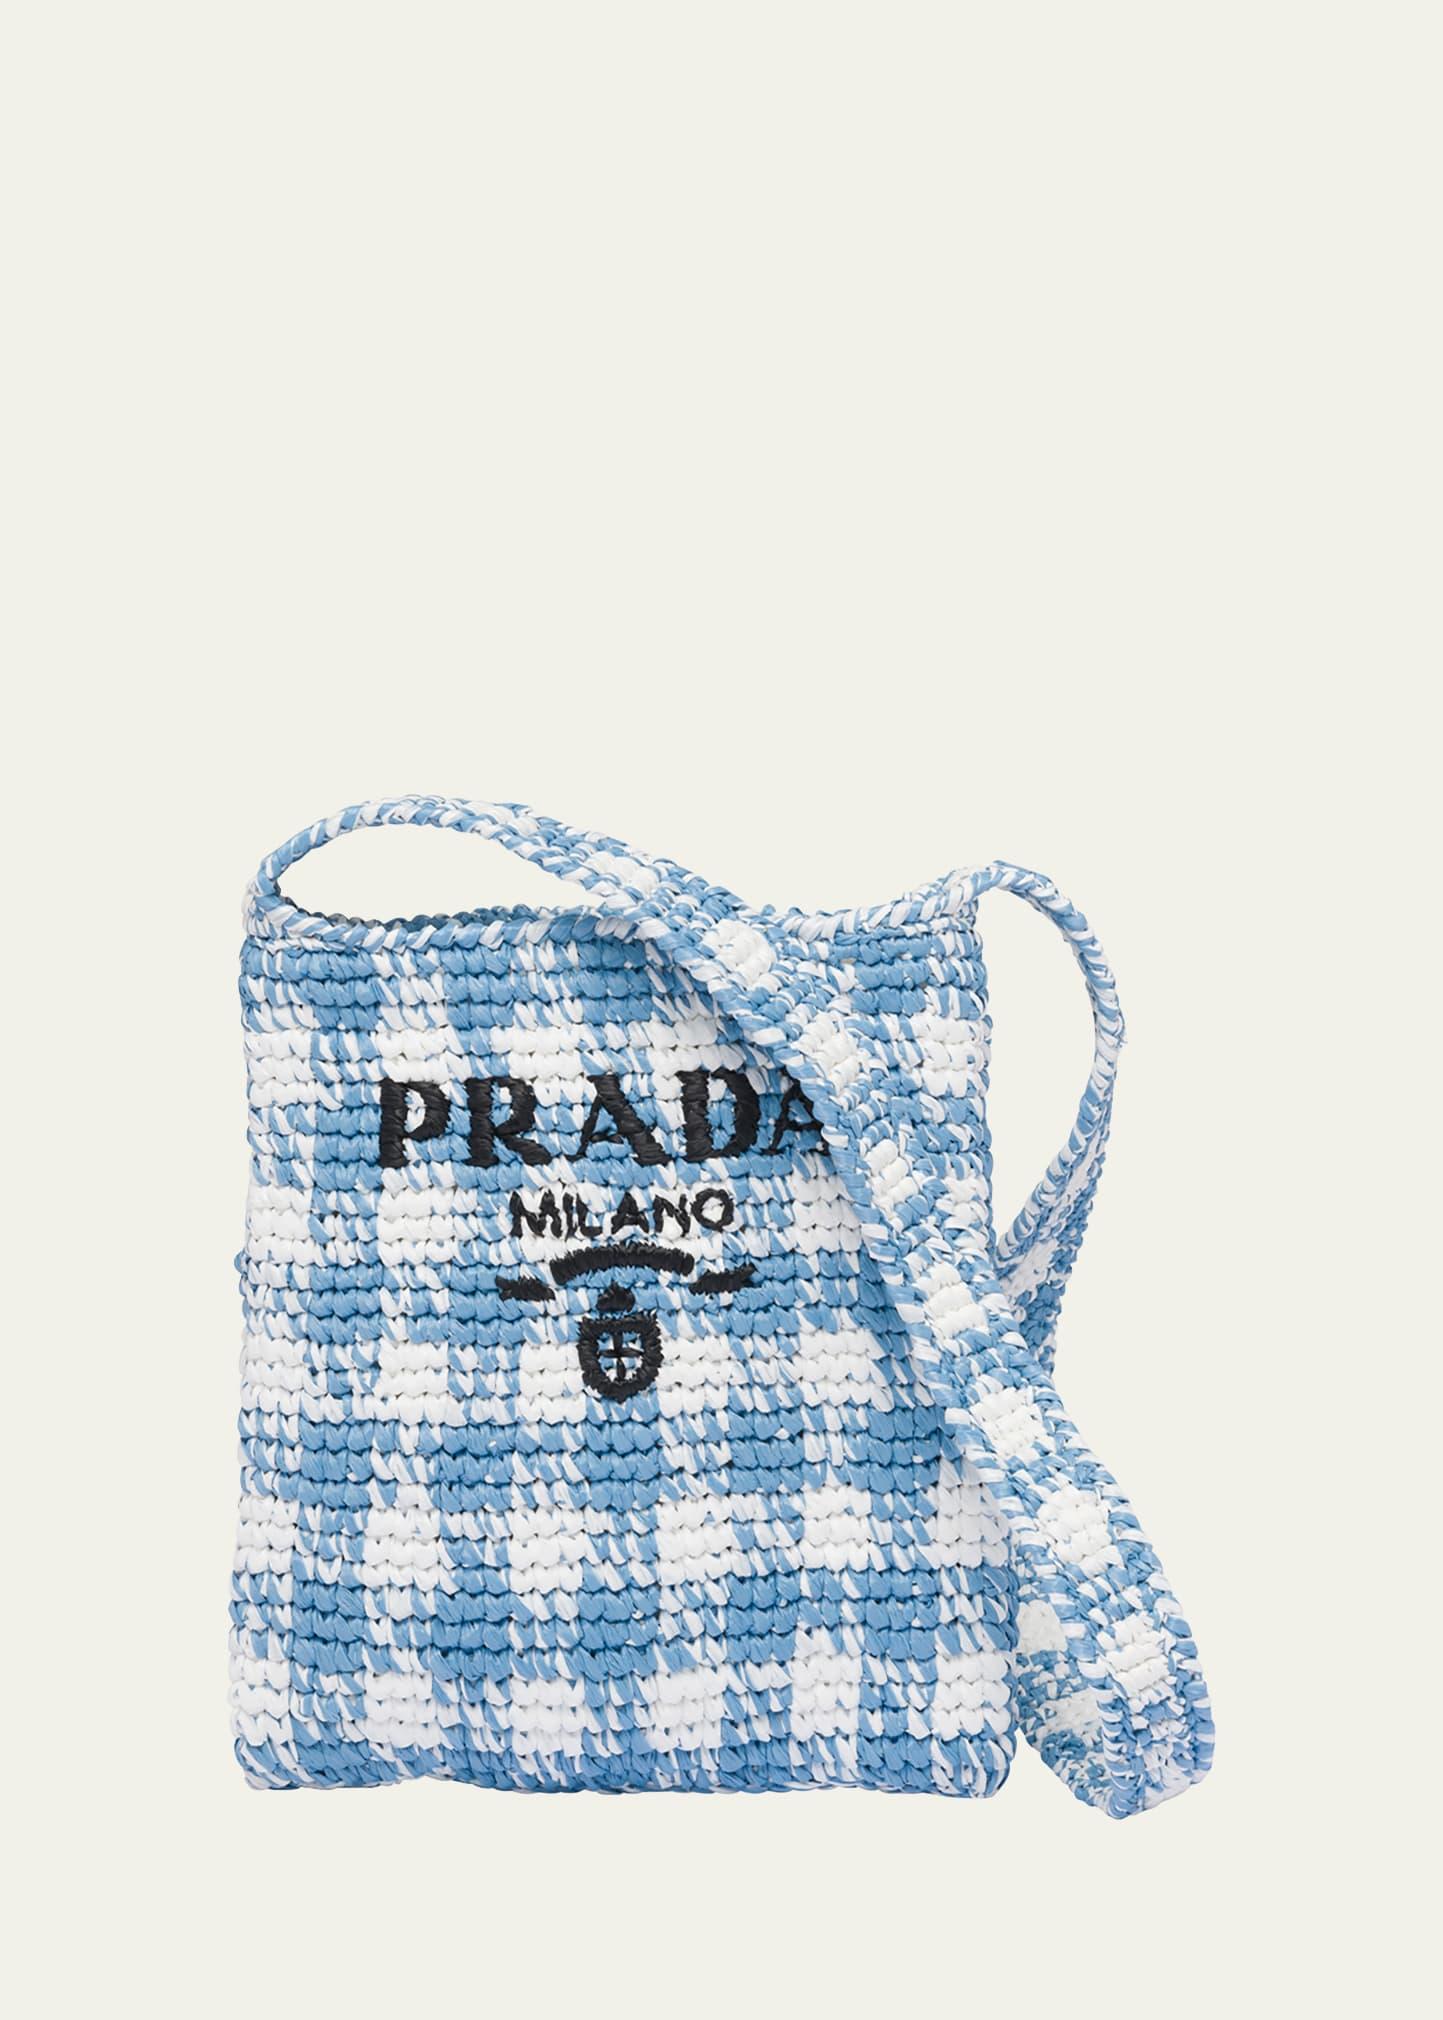 logo-patch raffia tote bag, Prada